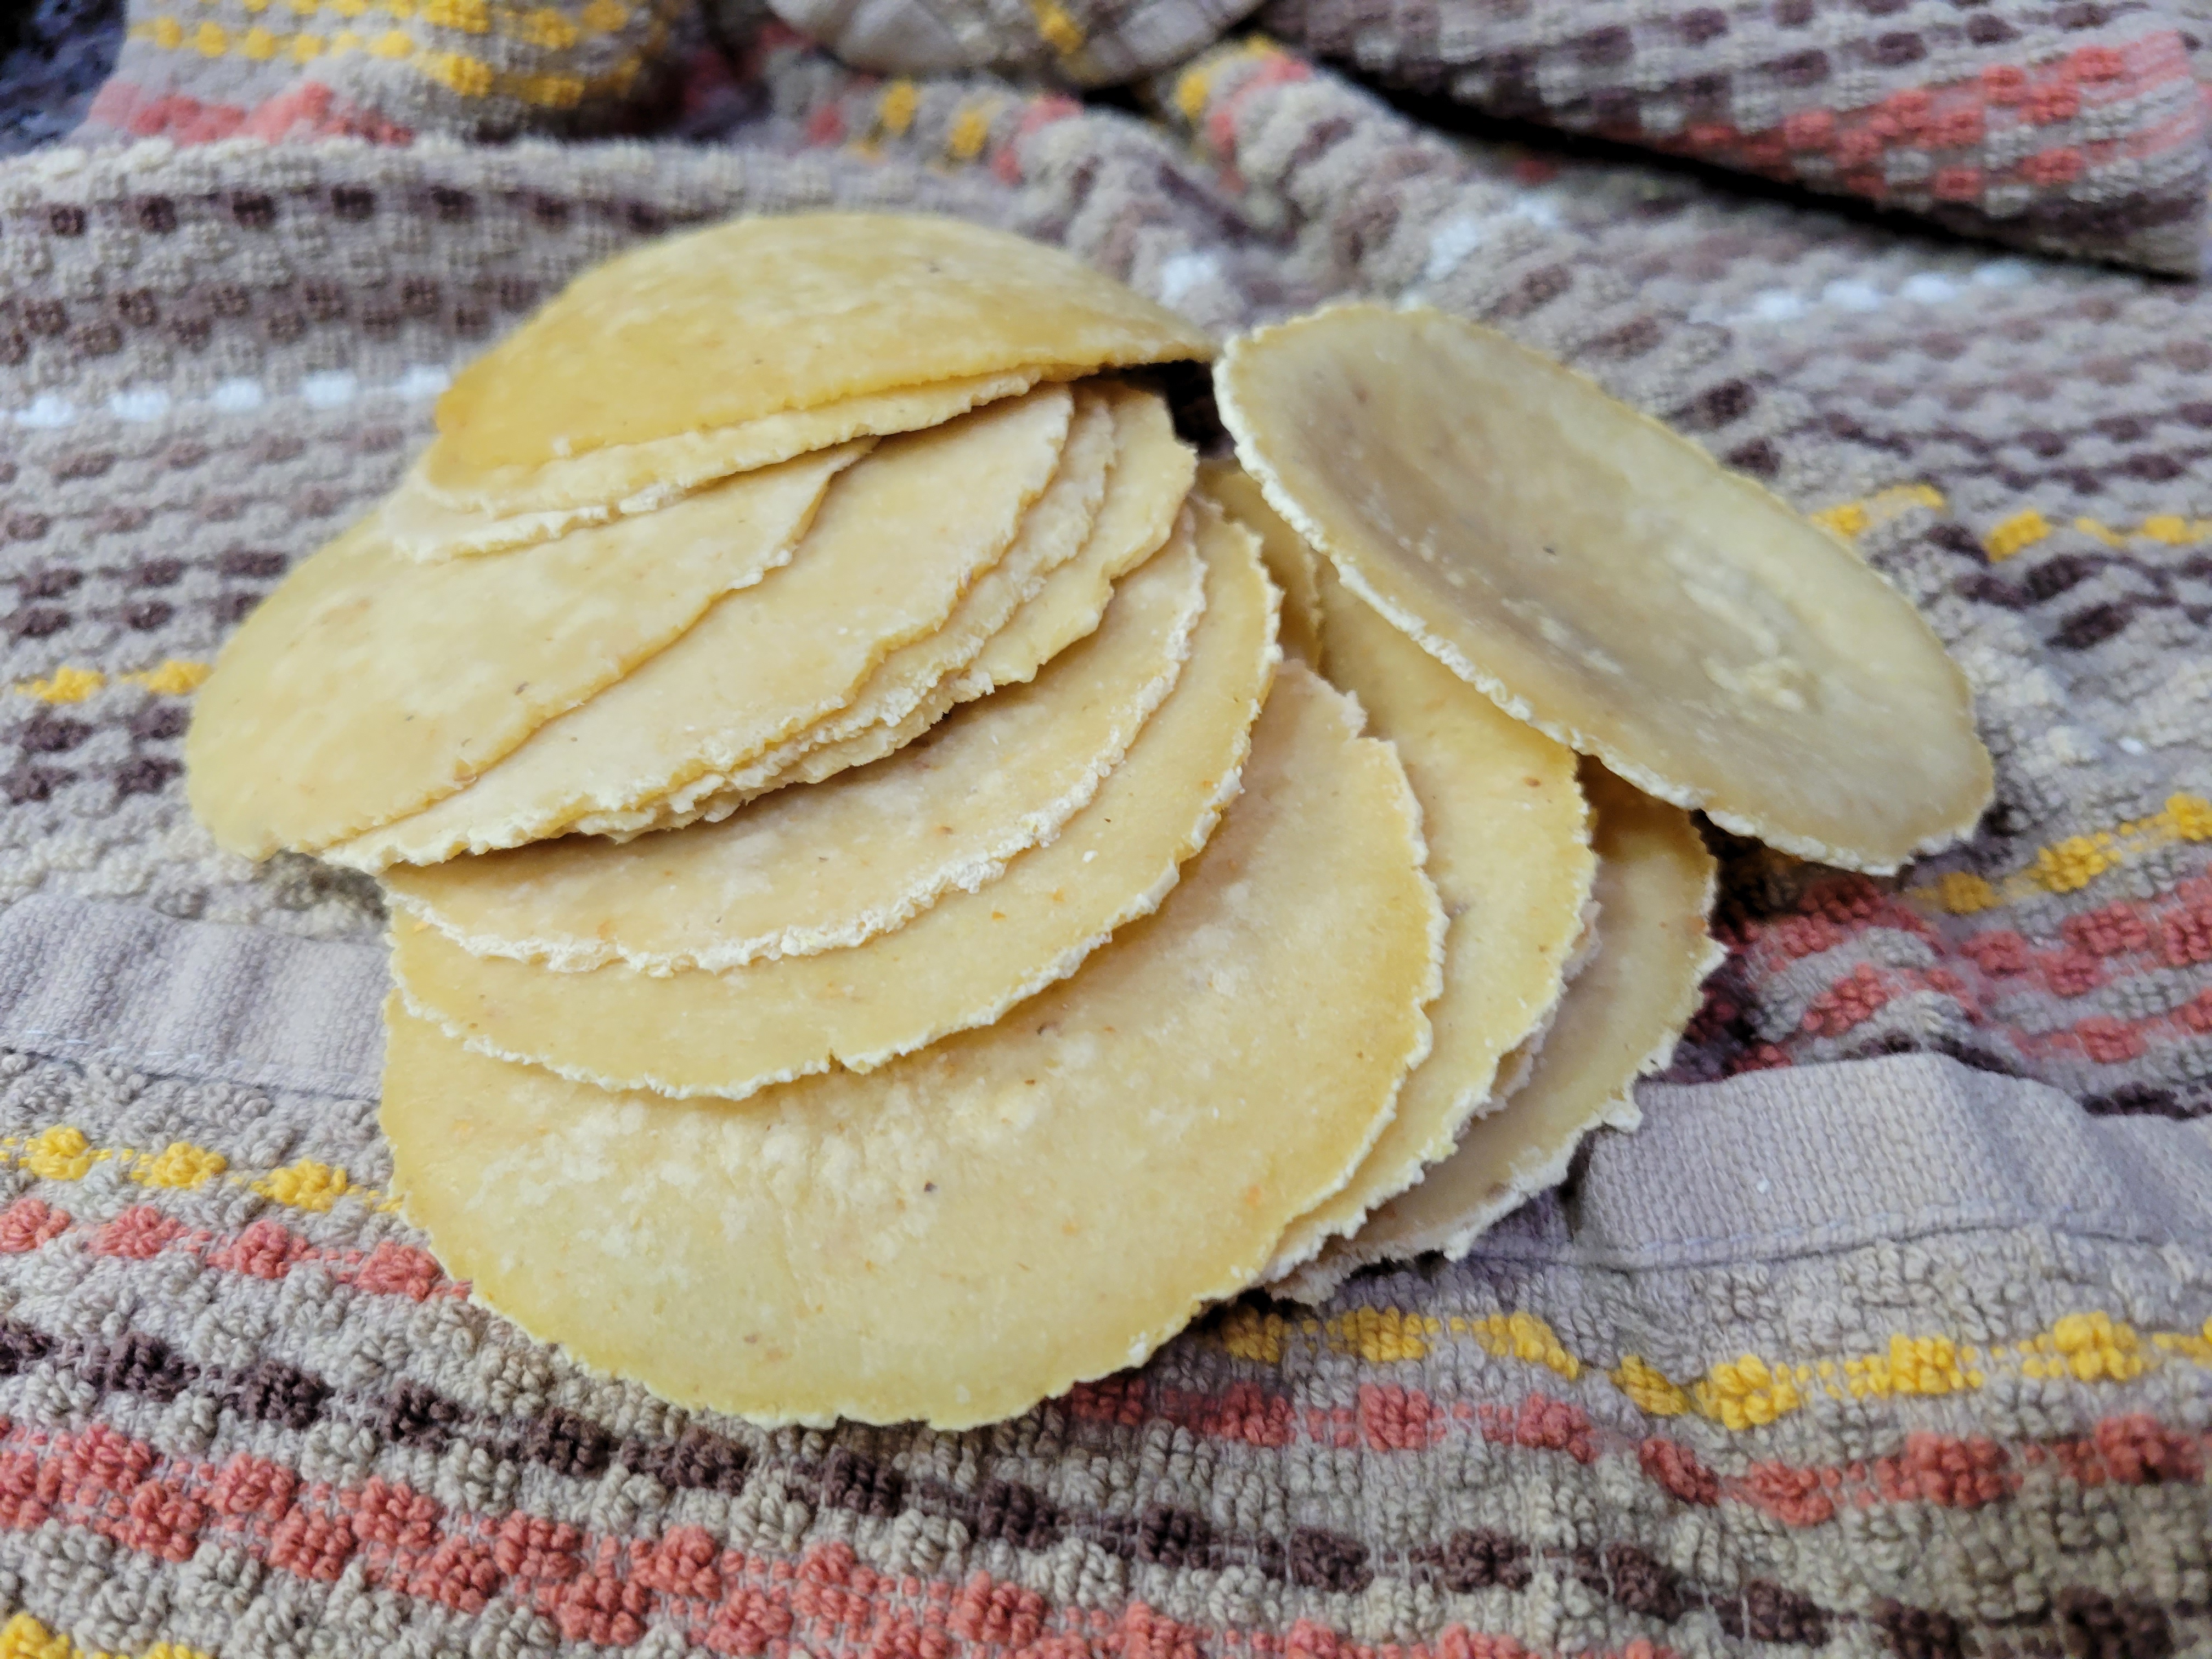 a dozen or so handmade mini-tortillas on a towel